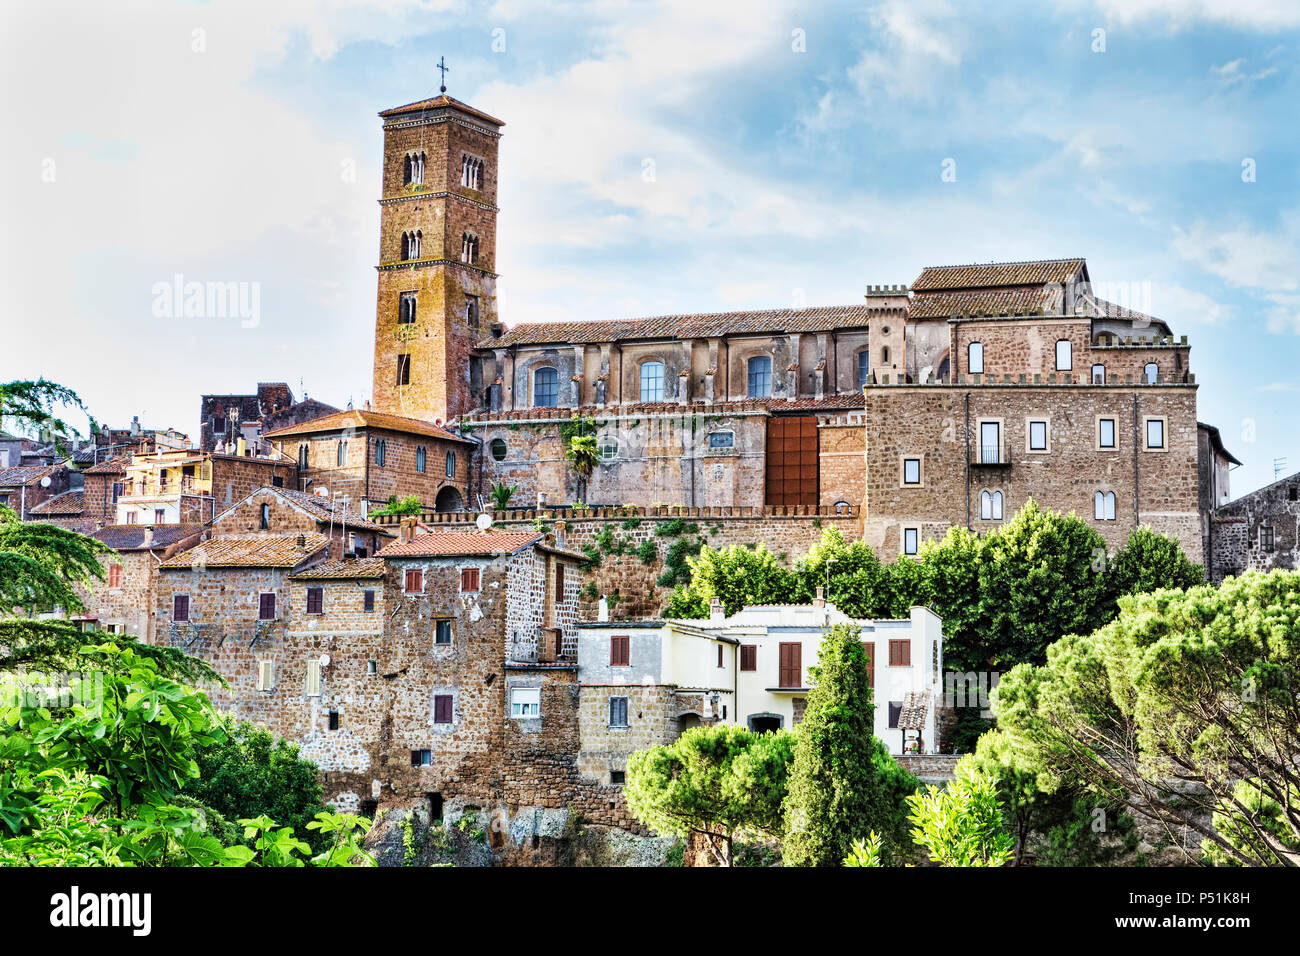 Paesaggio di Antico Borgo di Sutri e il campanile di Santa Maria Assunta s Concattedrale Foto Stock